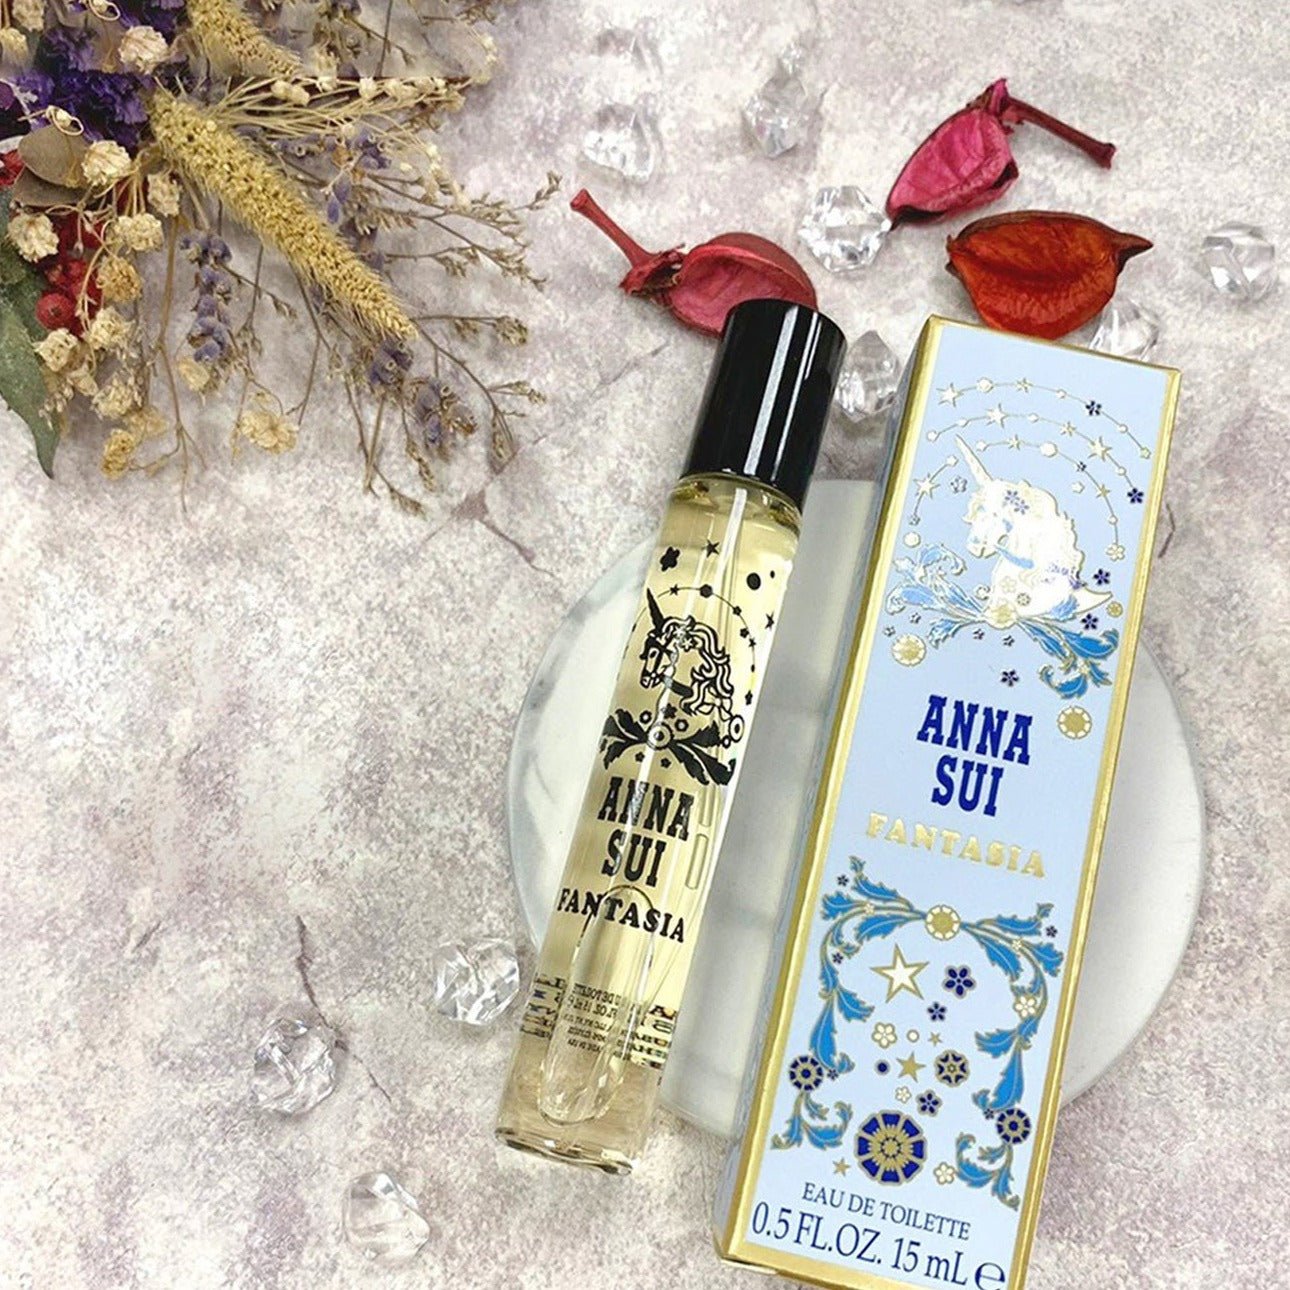 Anna Sui Fantasia EDT Travel Set | My Perfume Shop Australia